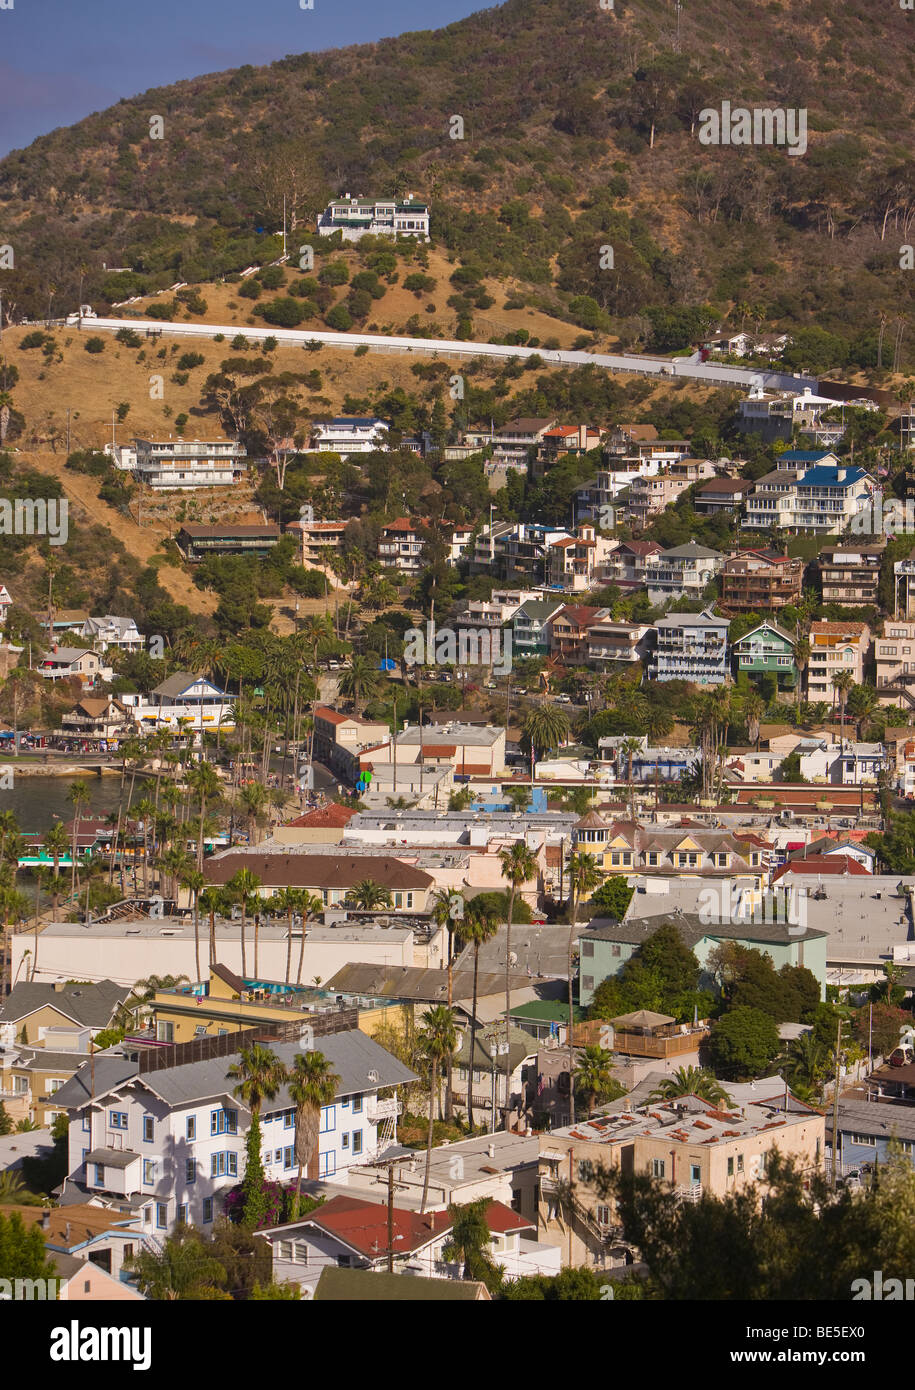 AVALON, CA, USA - Town of Avalon on Santa Catalina Island Stock Photo